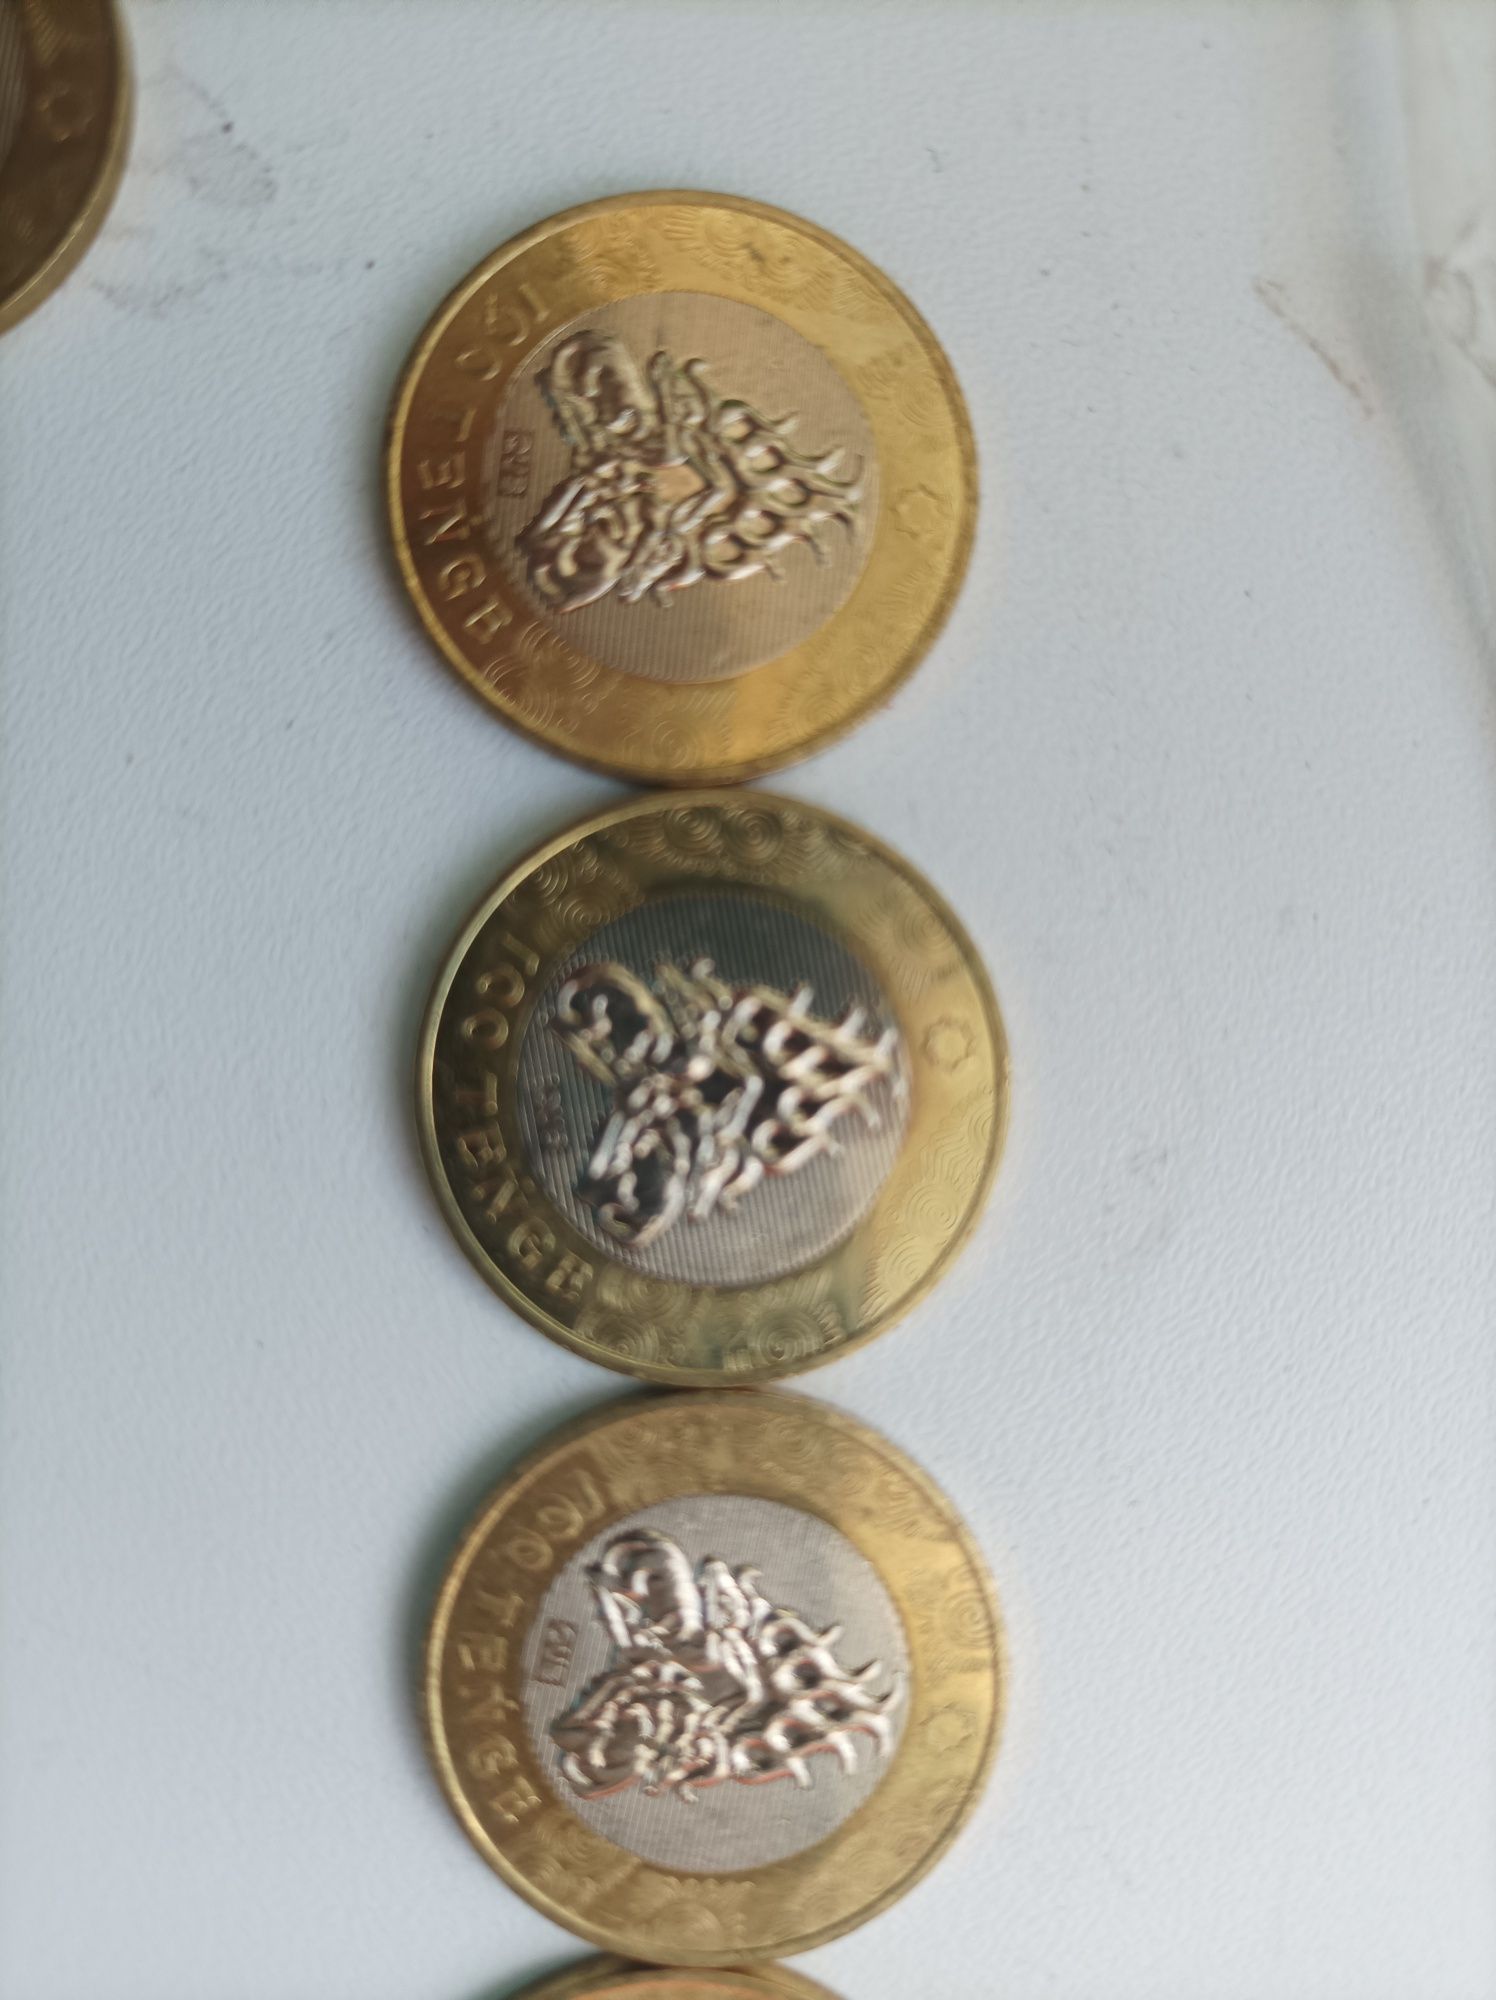 Разные Монеты по 100 тенге лимитированные